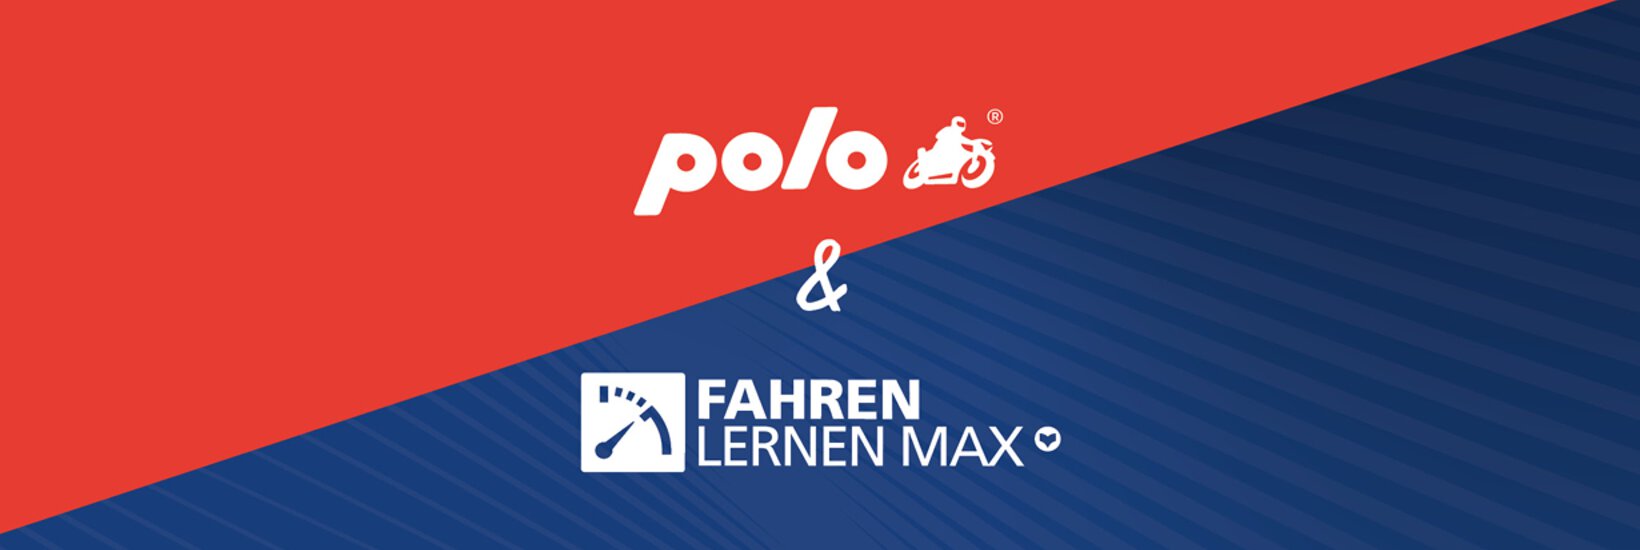 POLO und Fahren Lernen Max Gewinnspiel Banner mit Logos